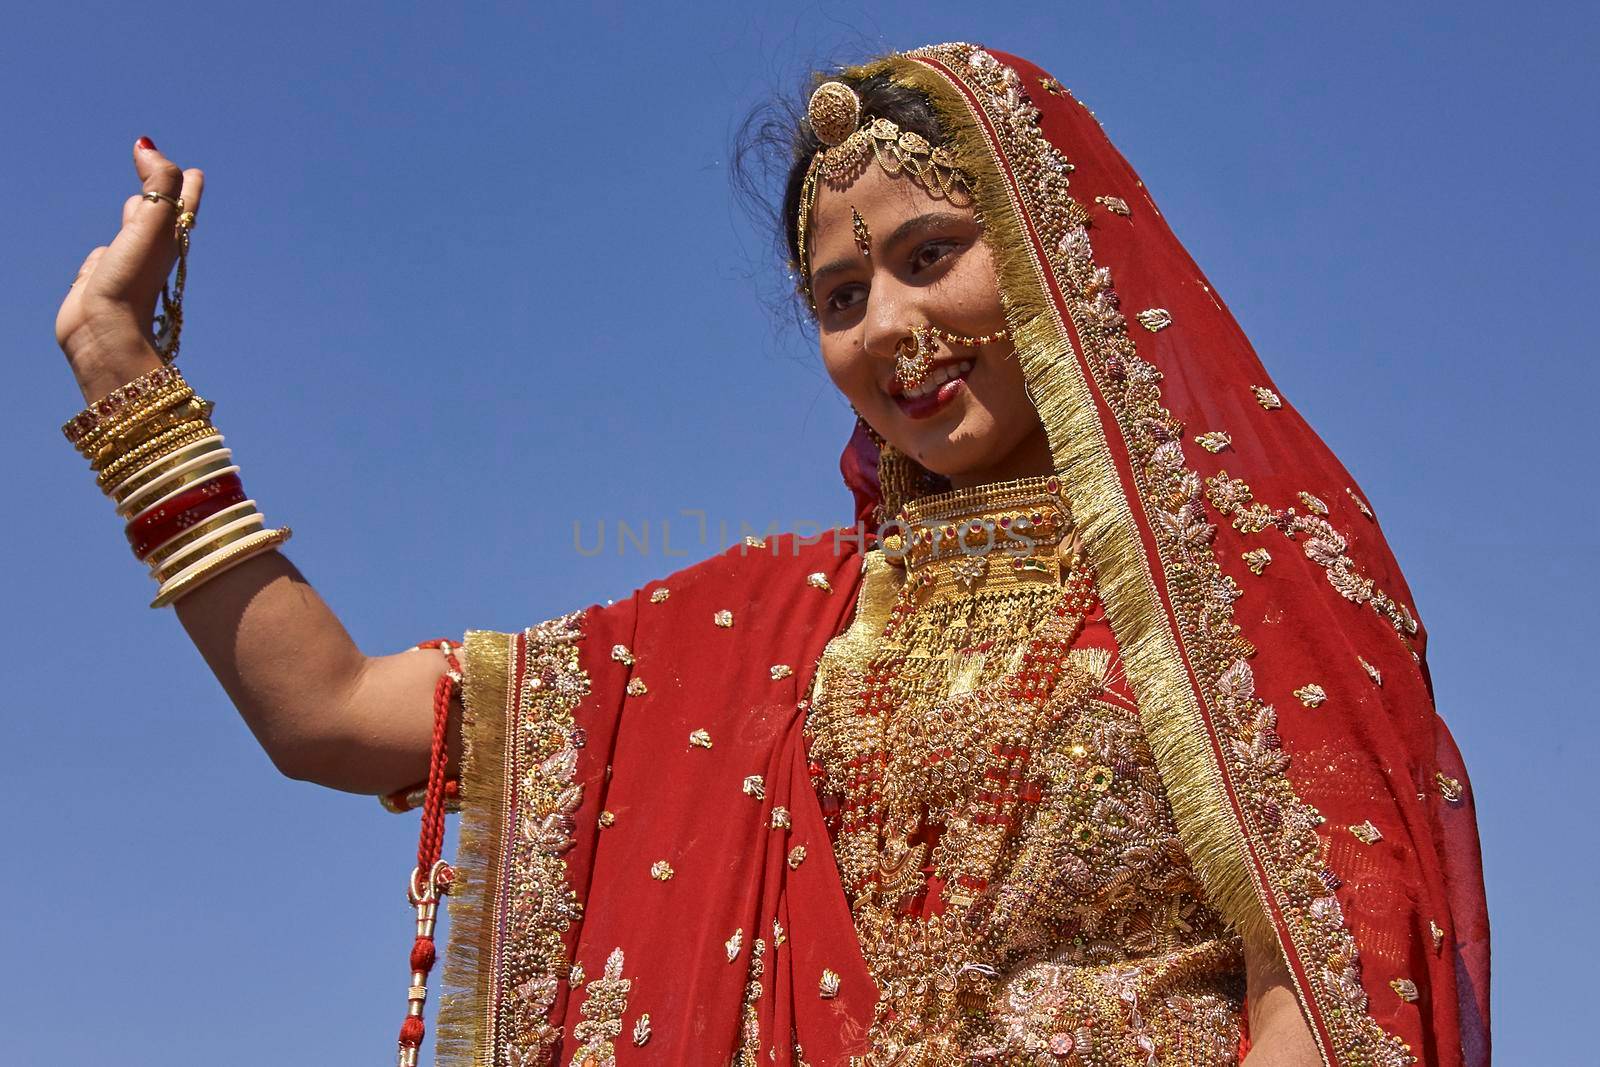 Indian Bride by JeremyRichards